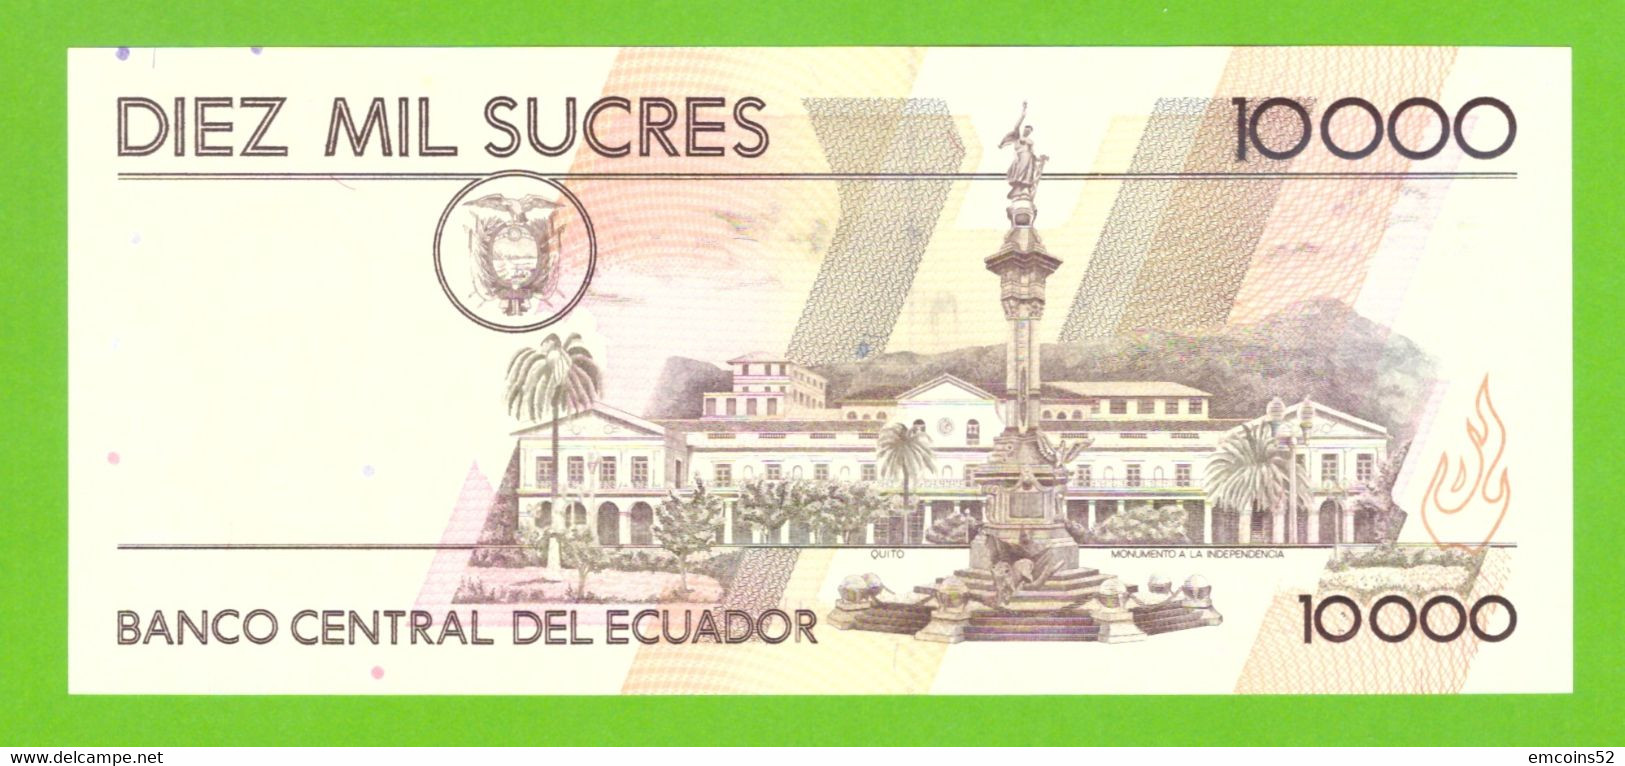 ECUADOR 10000 SUCRES 1995 AM  P-127b  UNC - Equateur